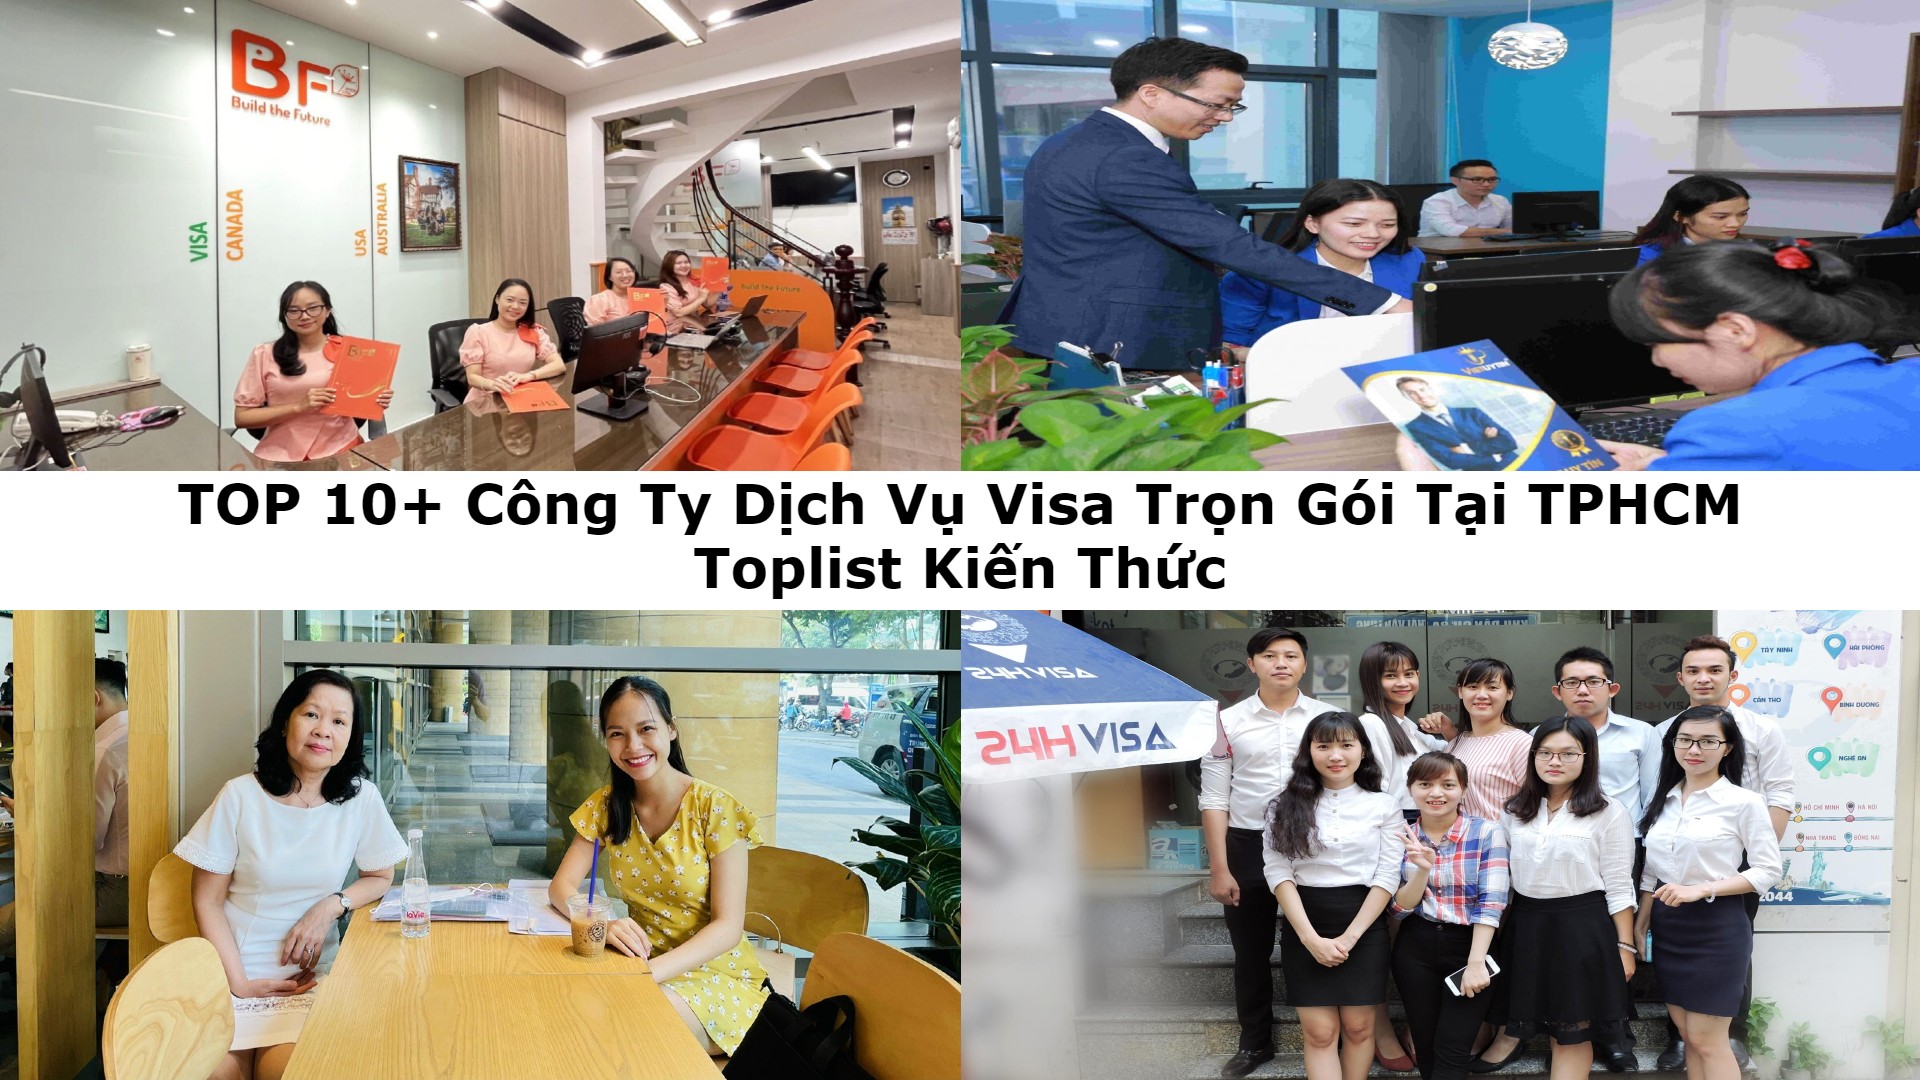 TOP 10+ Công Ty Dịch Vụ Visa Trọn Gói Tại TPHCM